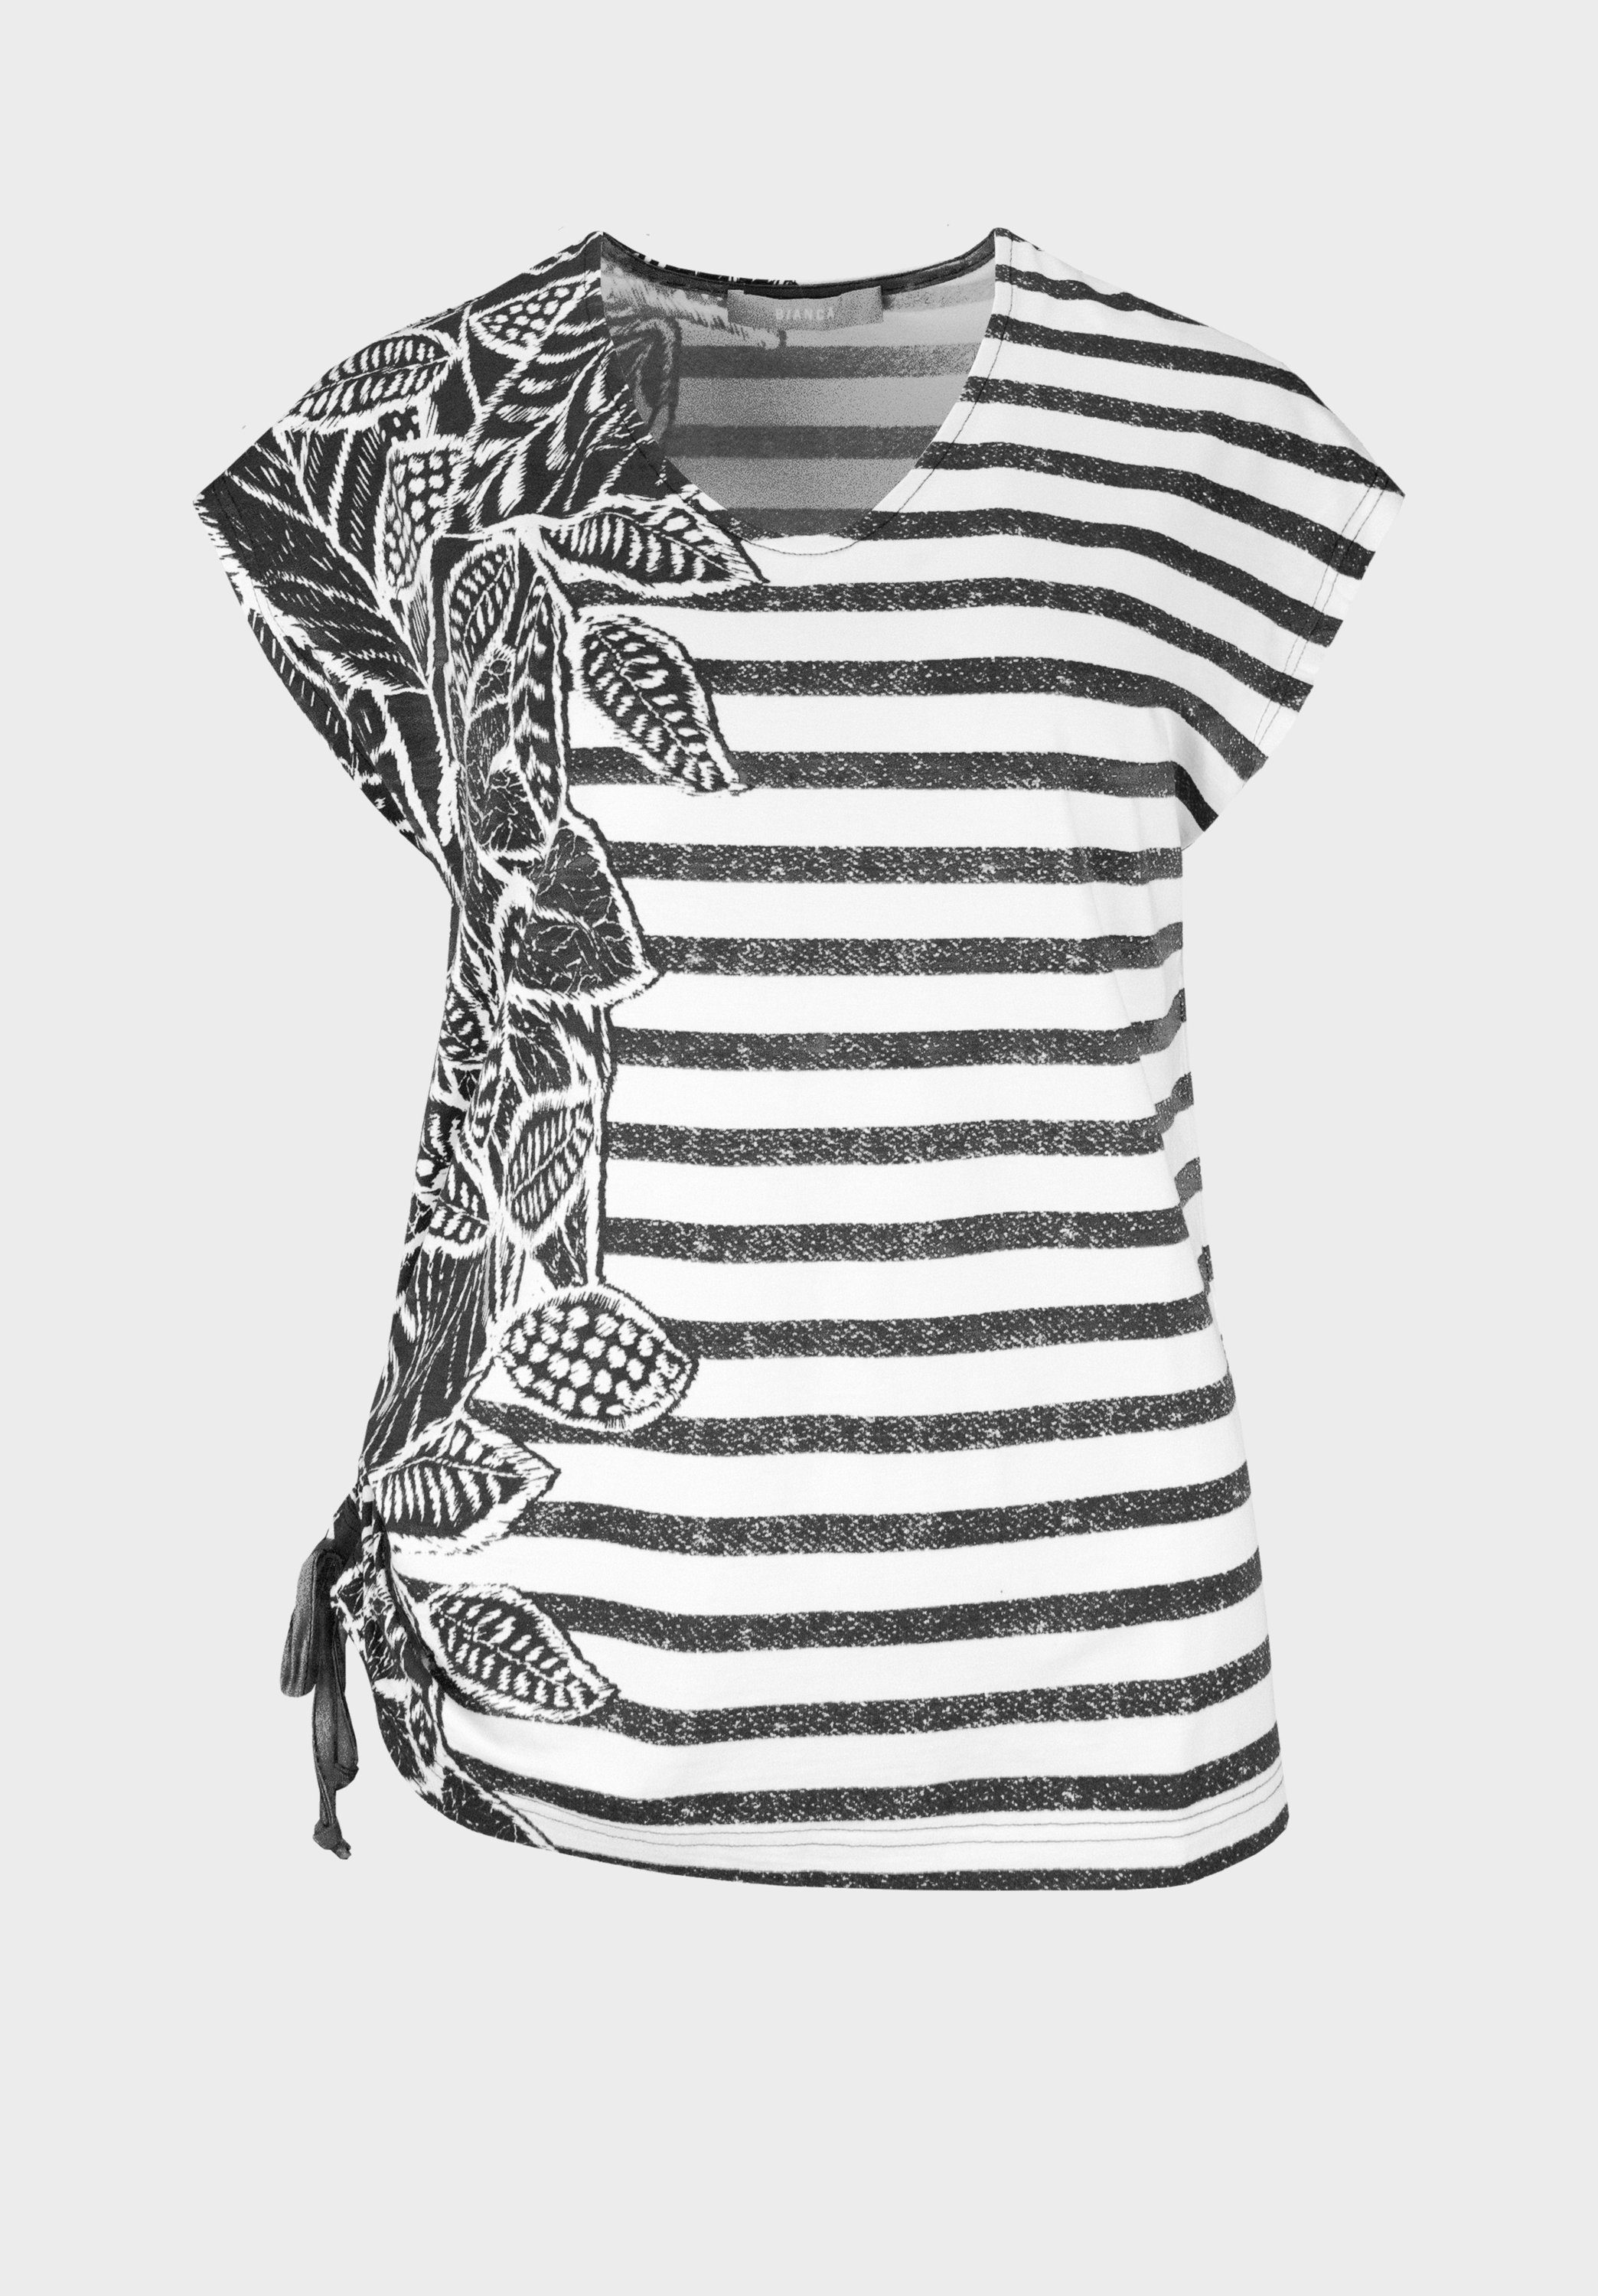 bianca Print-Shirt JULIE mit modernem Design aus Streifen und Palmen-Print grey mix